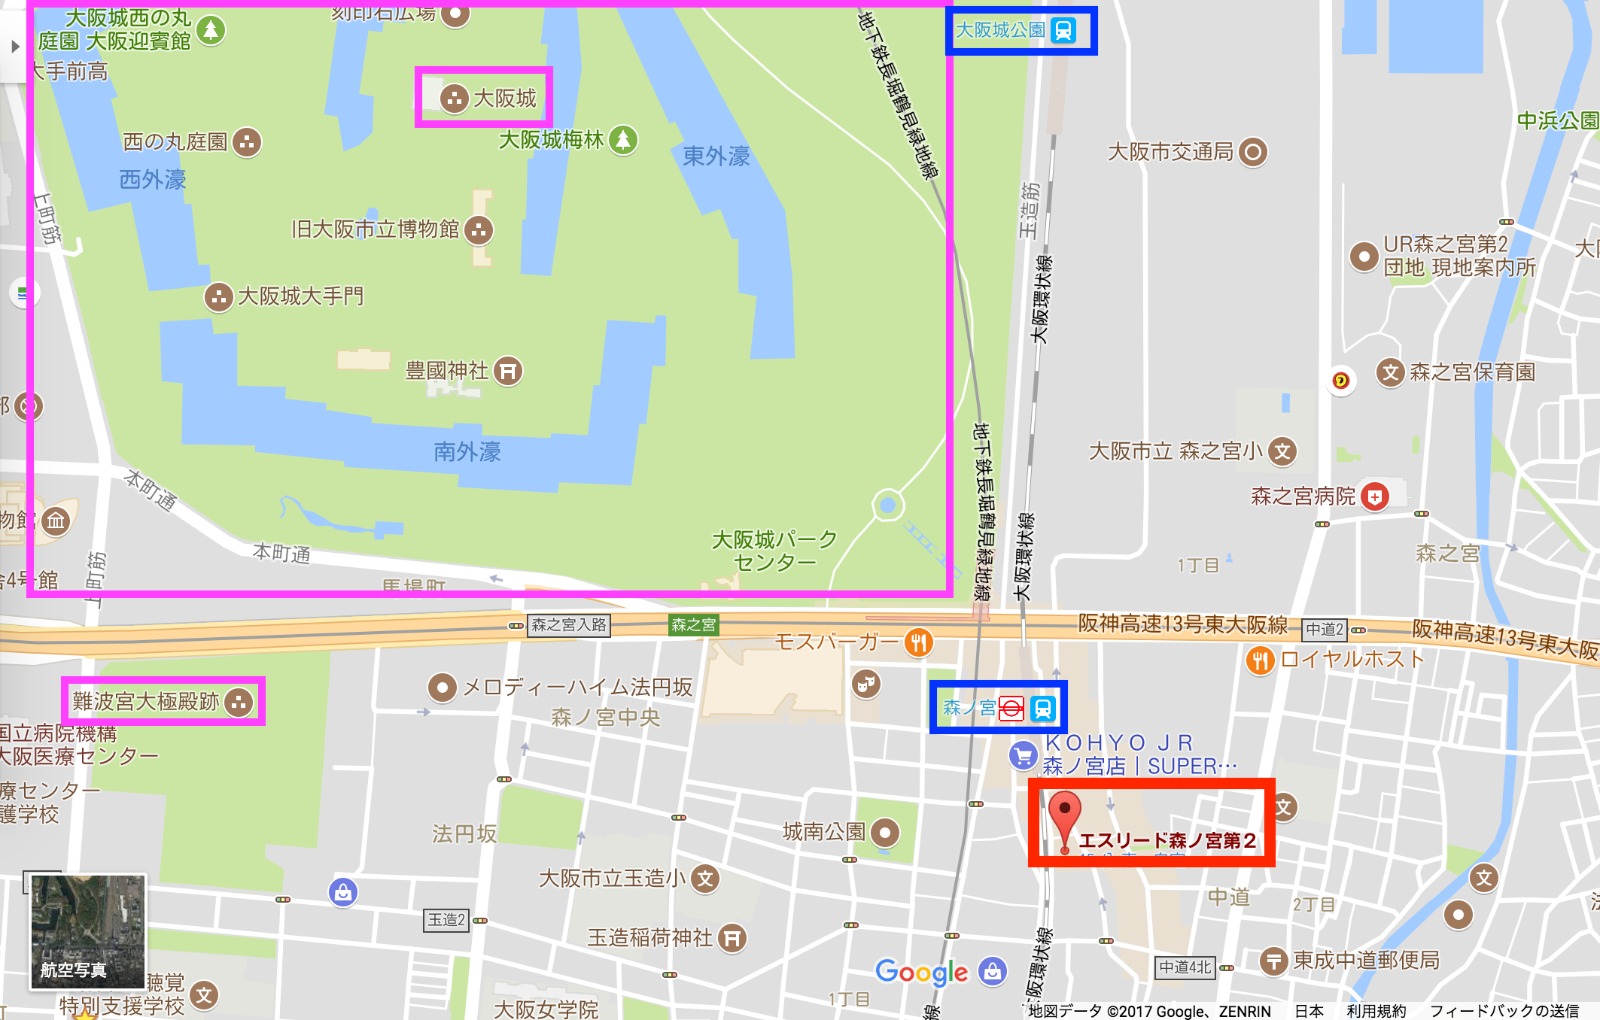 想生活便利又想好好感受大阪在地文艺气息, 森ノ宫绝对是首选，只需HK$53万